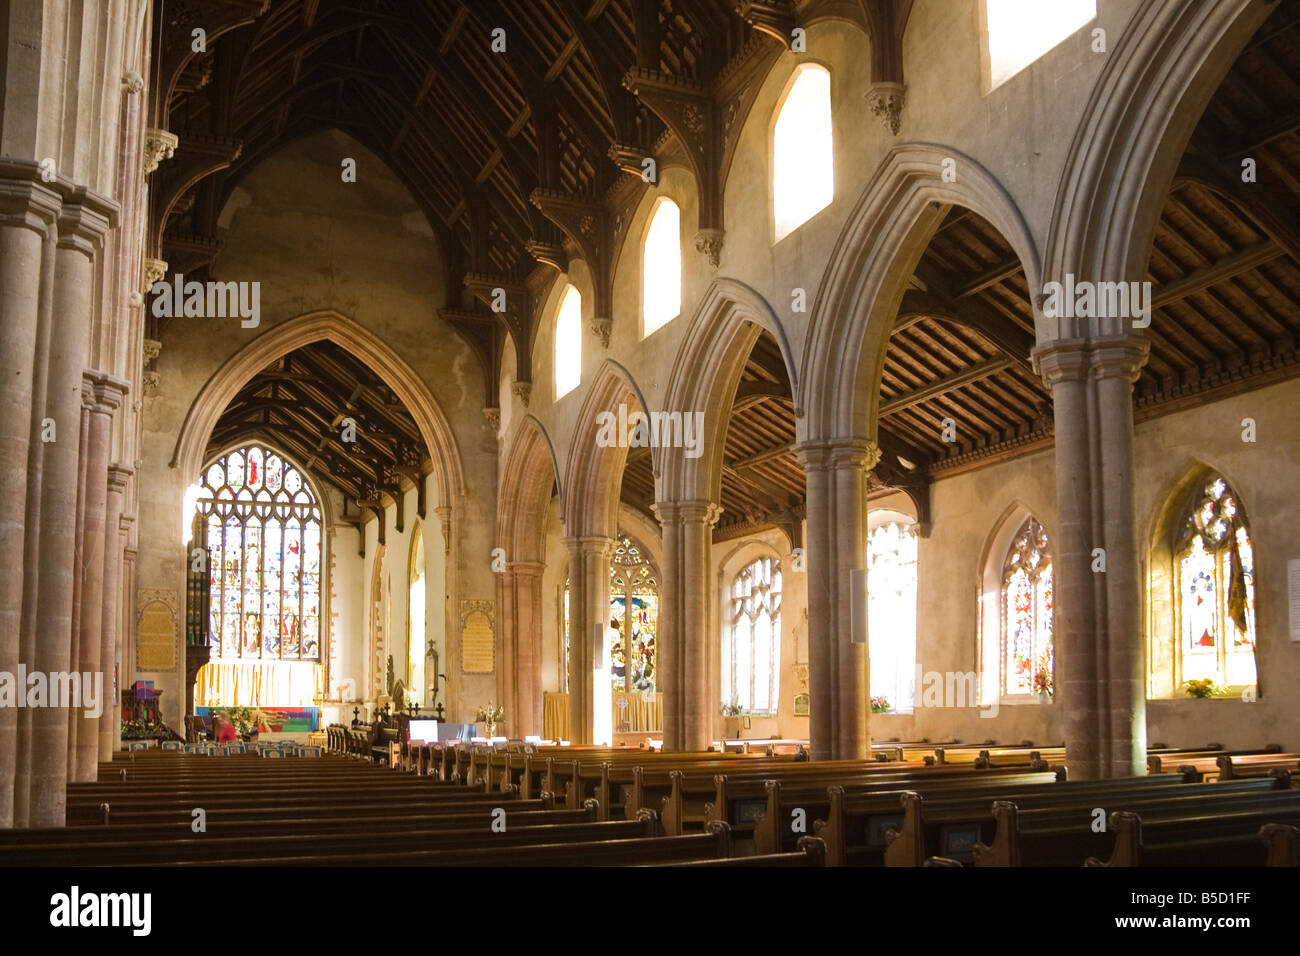 All'interno di Sant'Andrea Chiesa, Hingham, Norfolk, Regno Unito Foto Stock